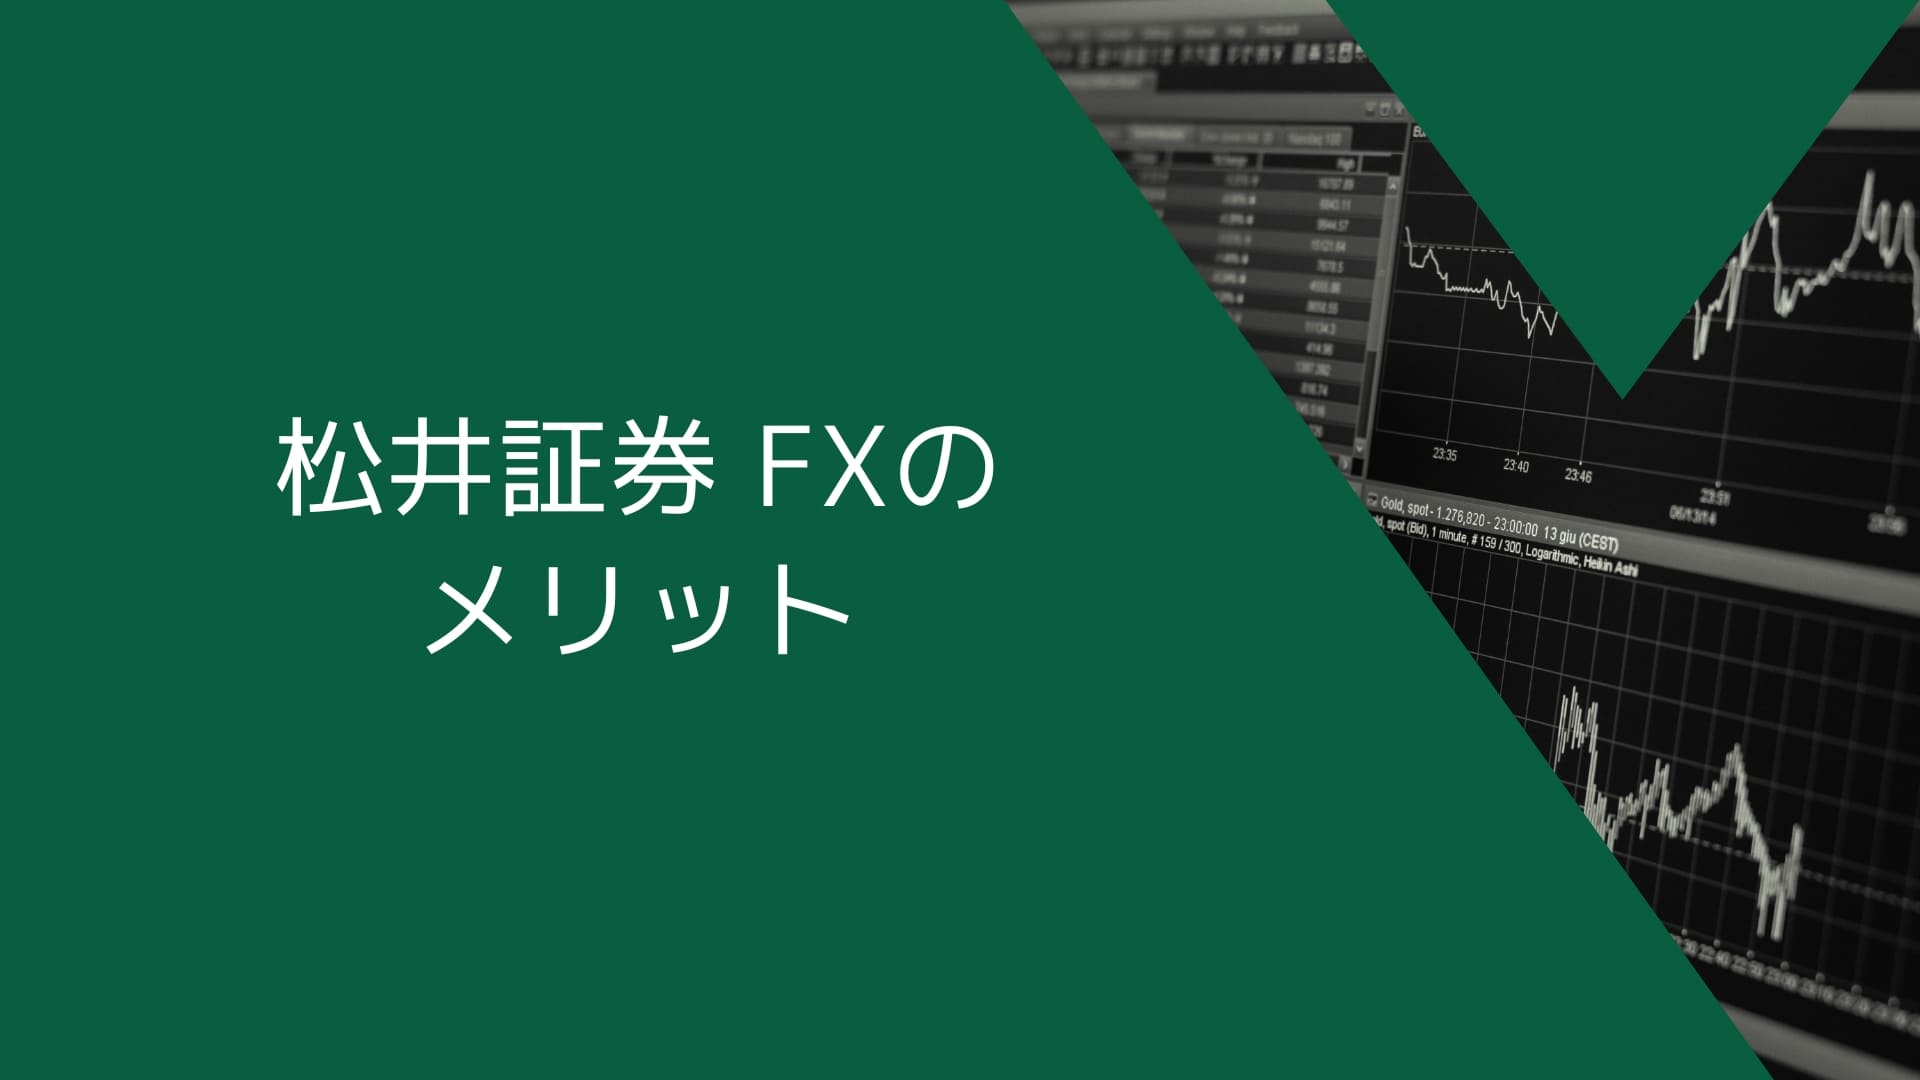 松井証券（MATSUI FX）のメリット